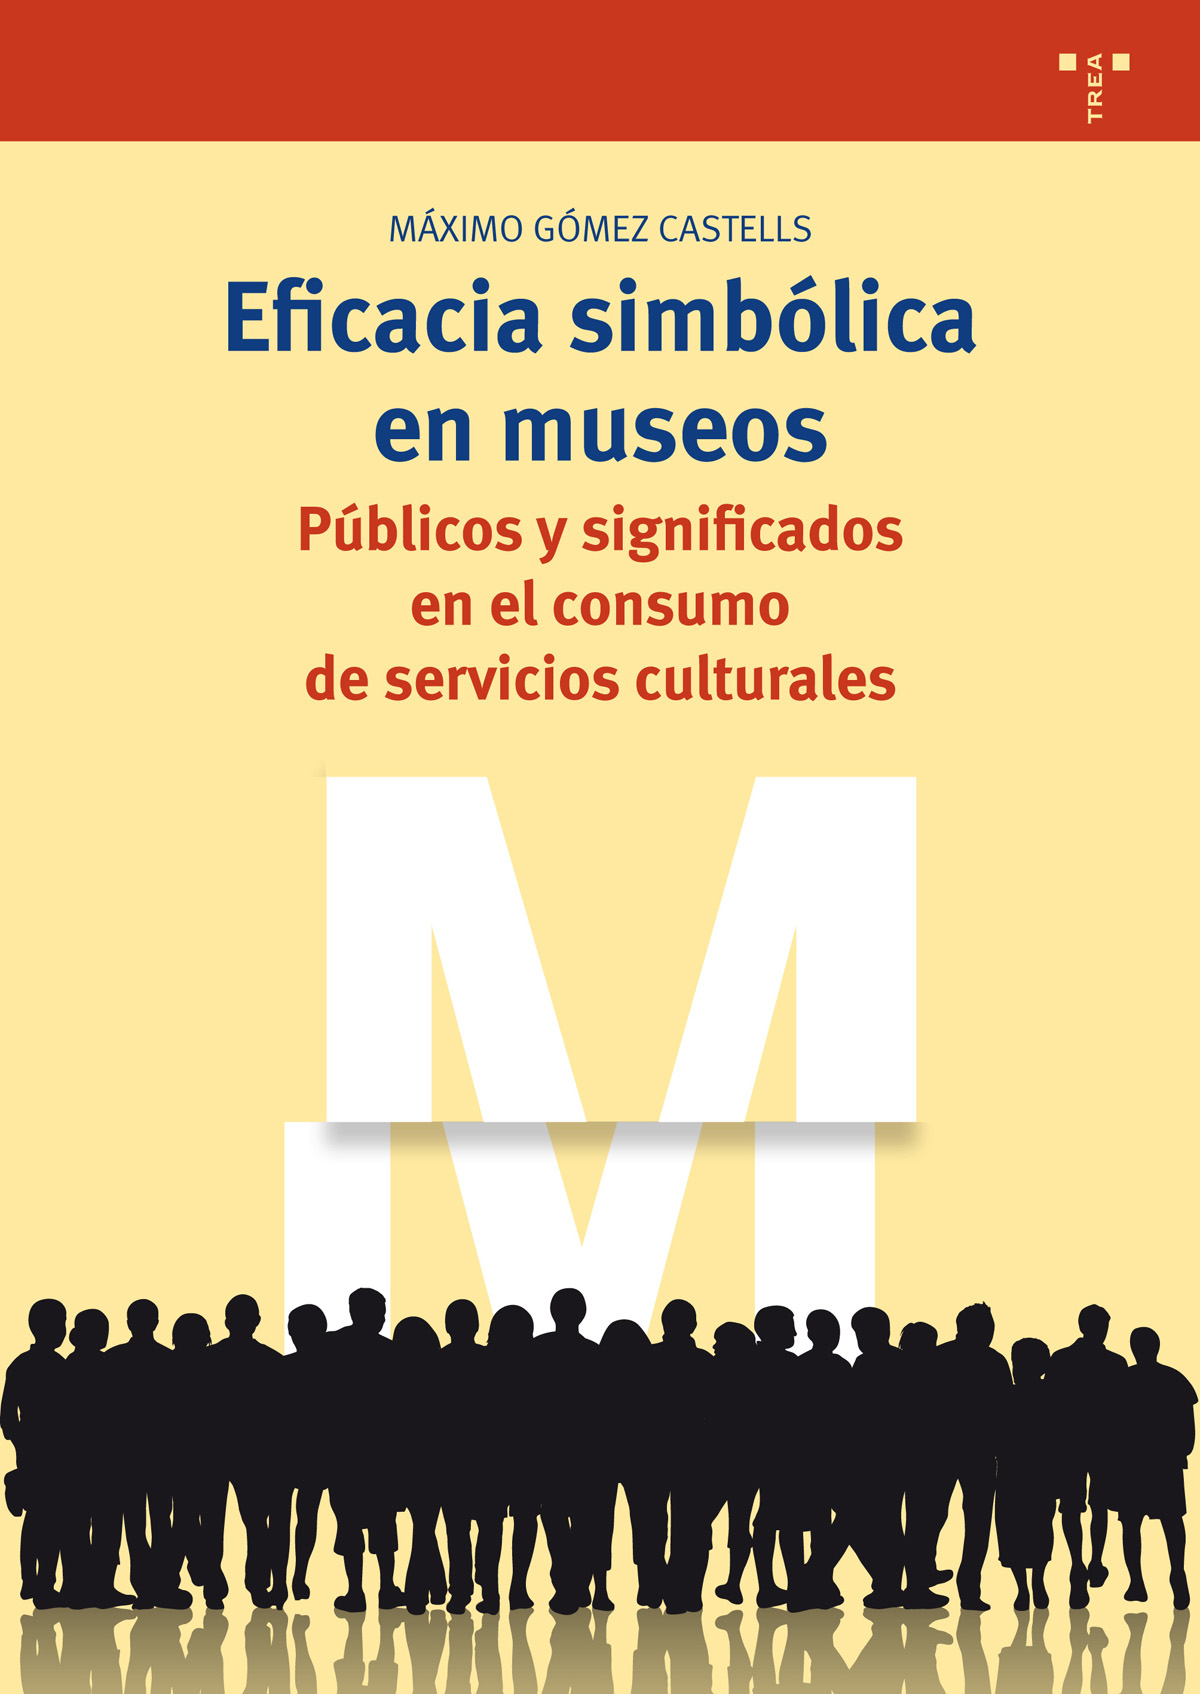 EFICACIA SIMBÓLICA DE MUSEOS